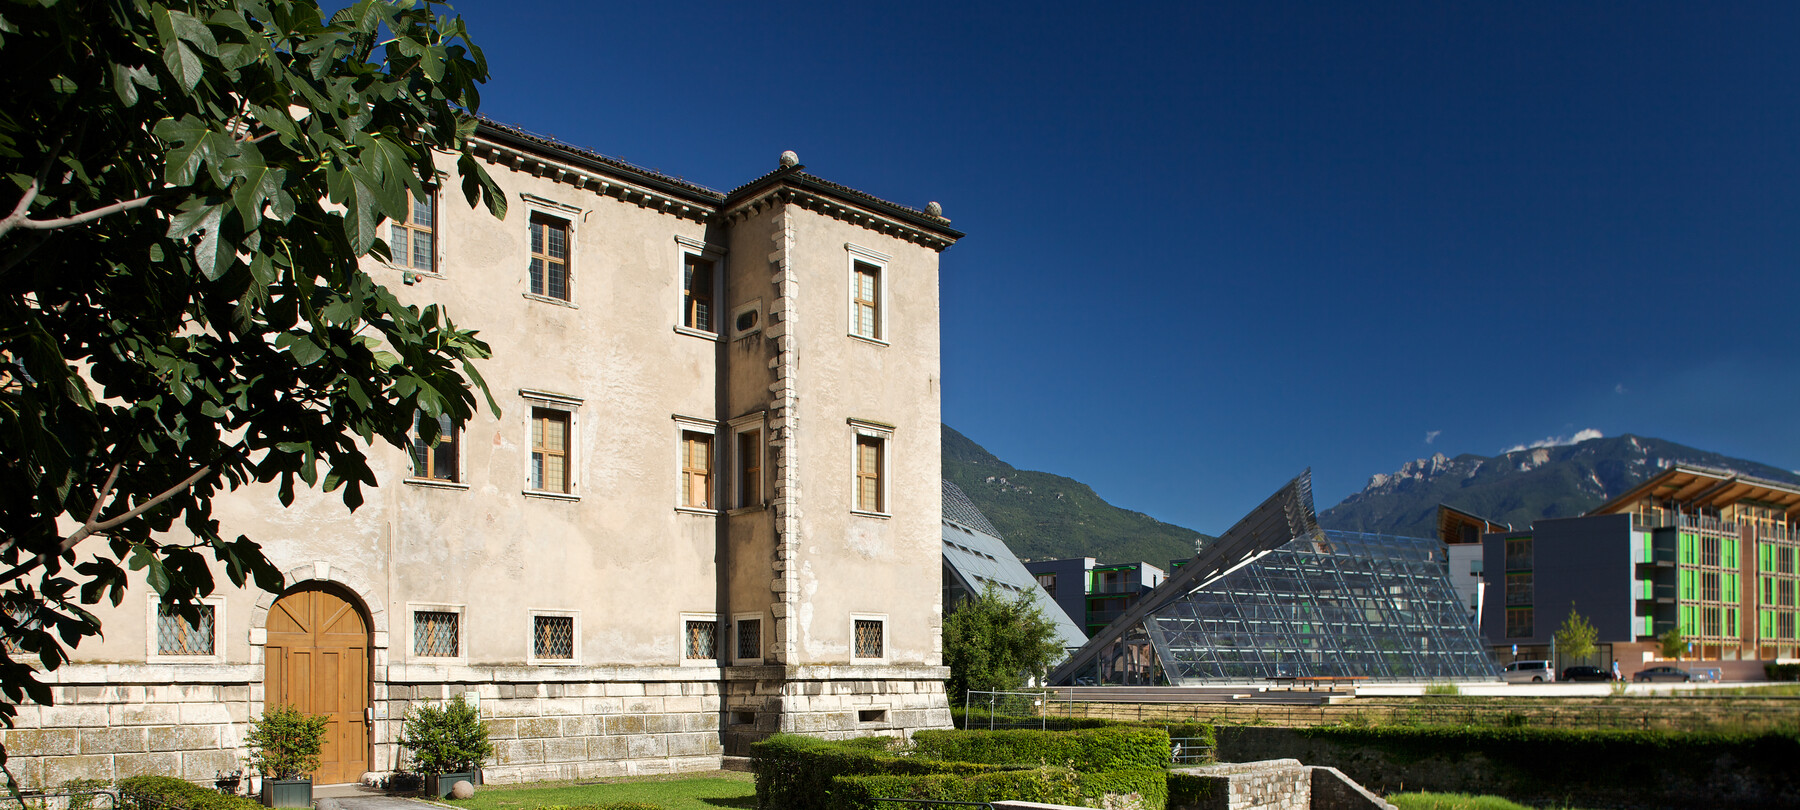 Mostre in Trentino | Trento, Rovereto e alte località